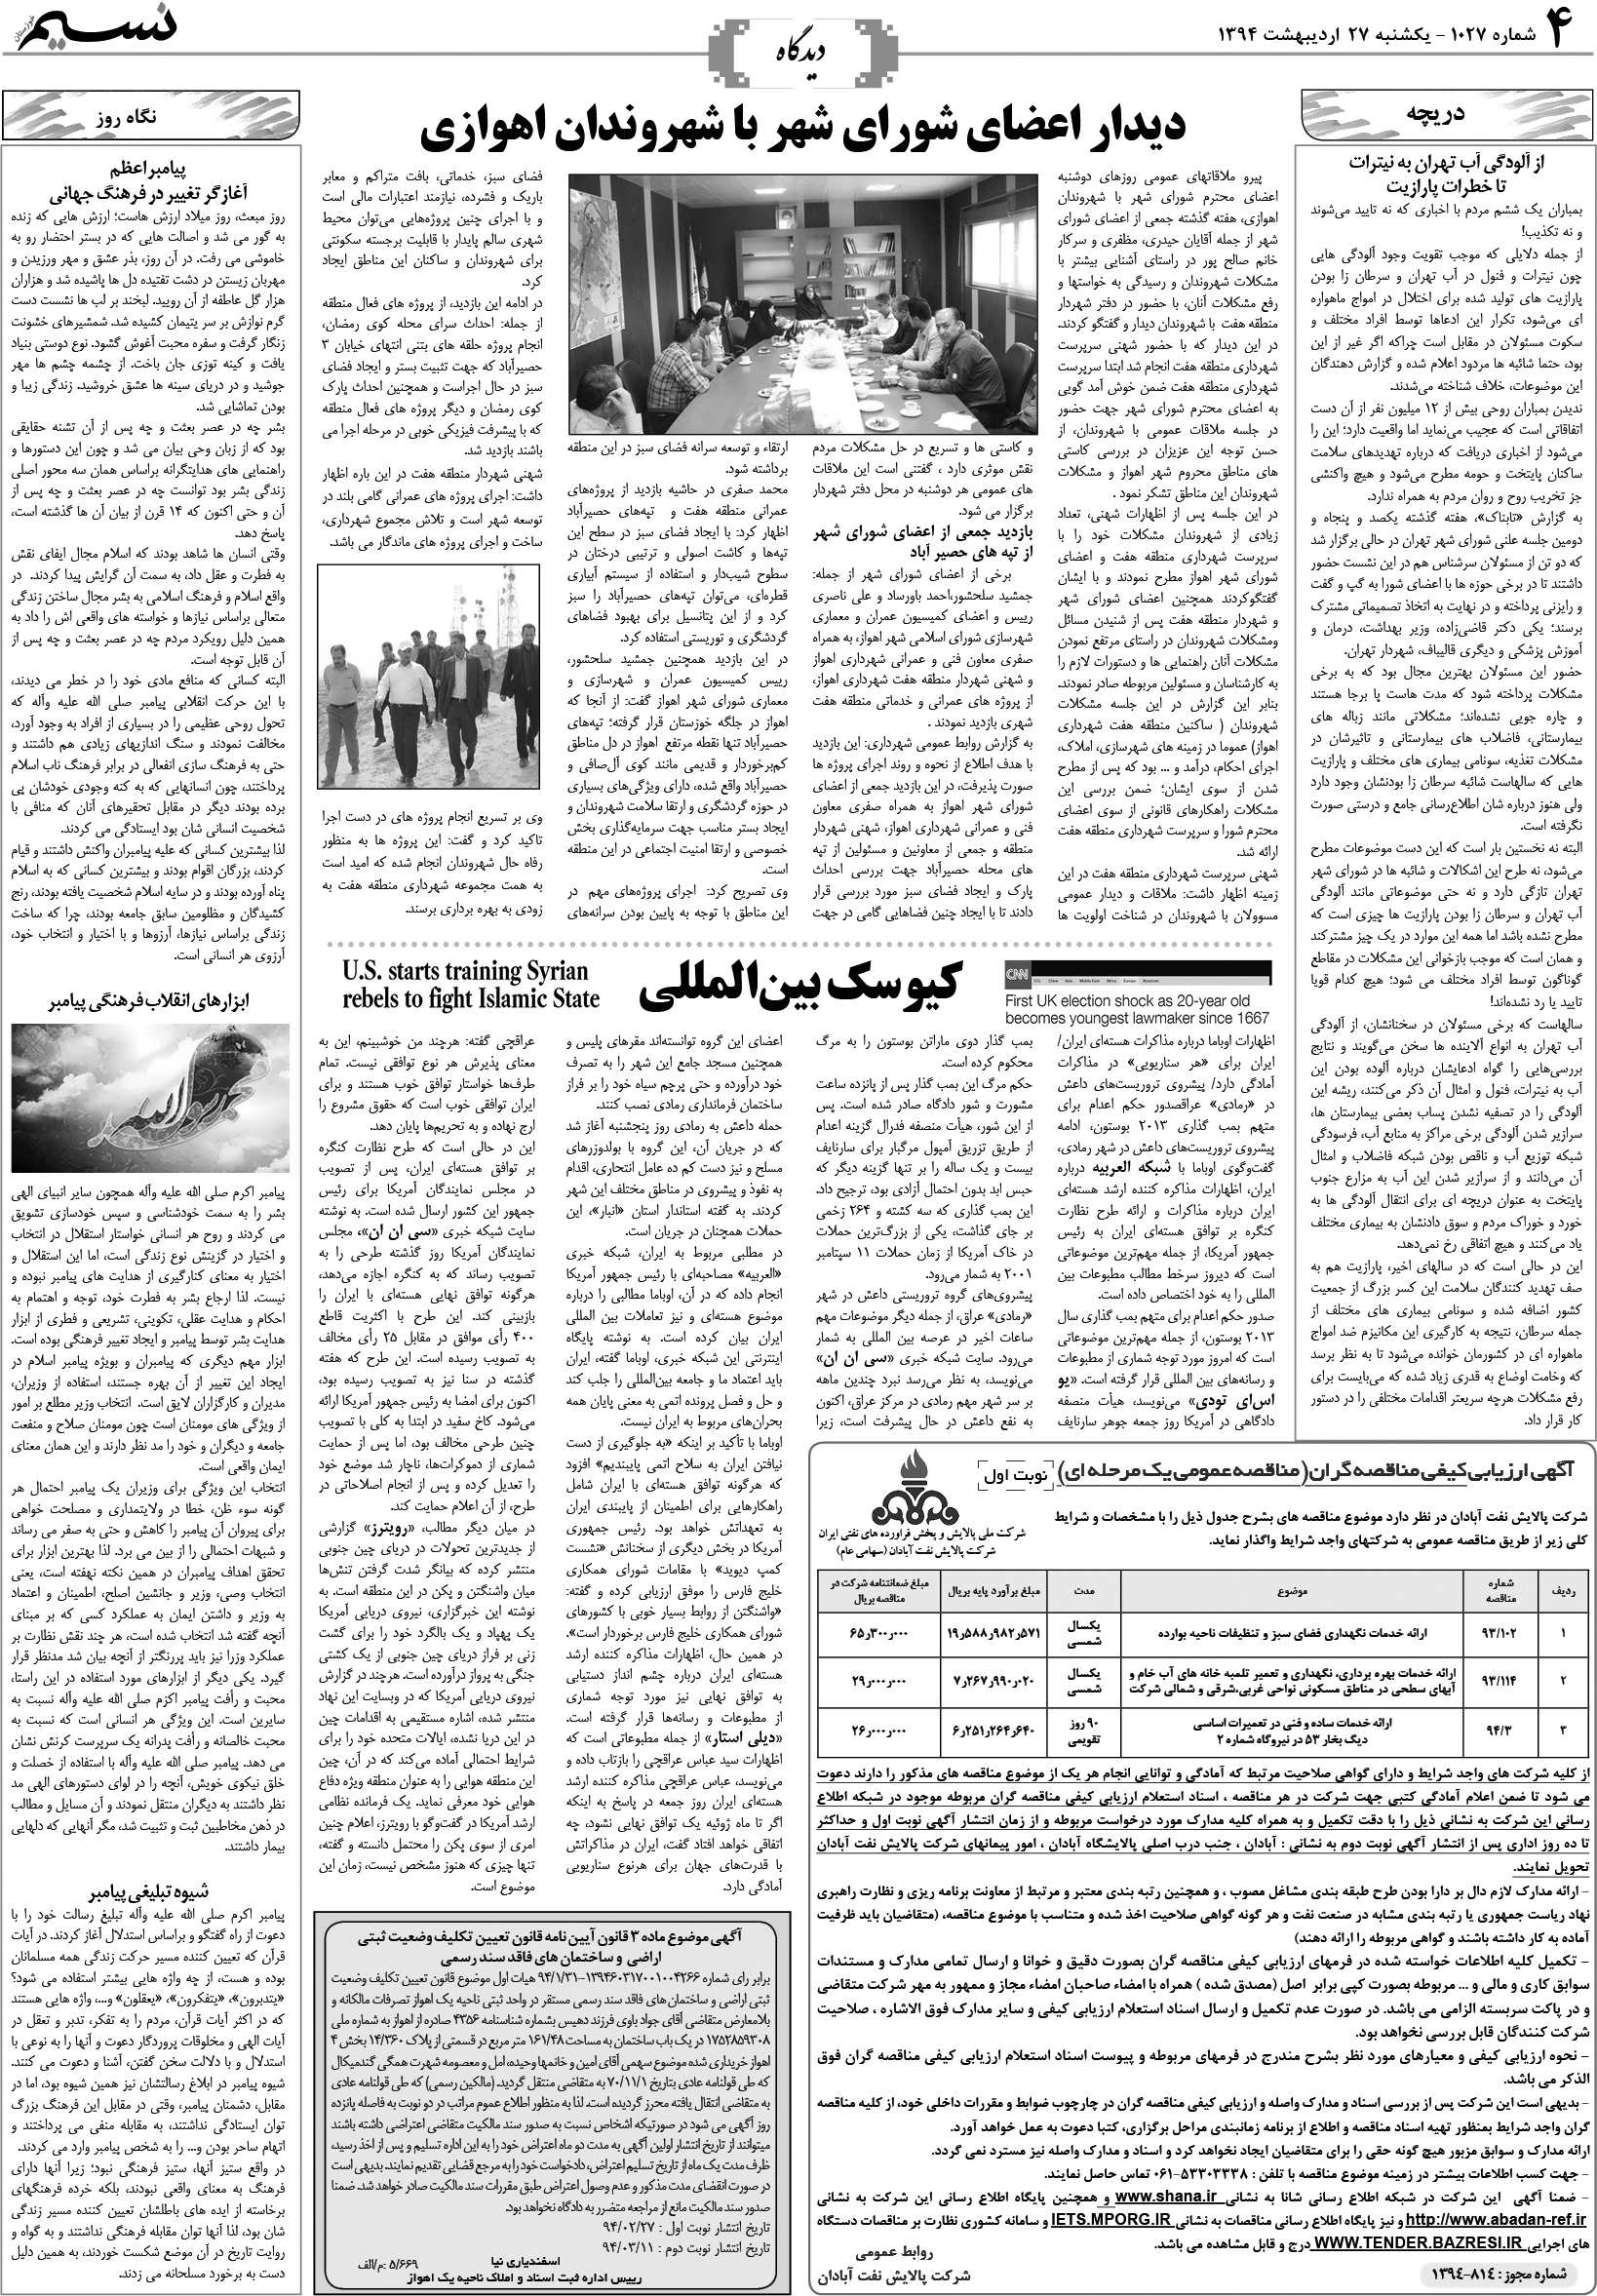 صفحه دیدگاه روزنامه نسیم شماره 1027